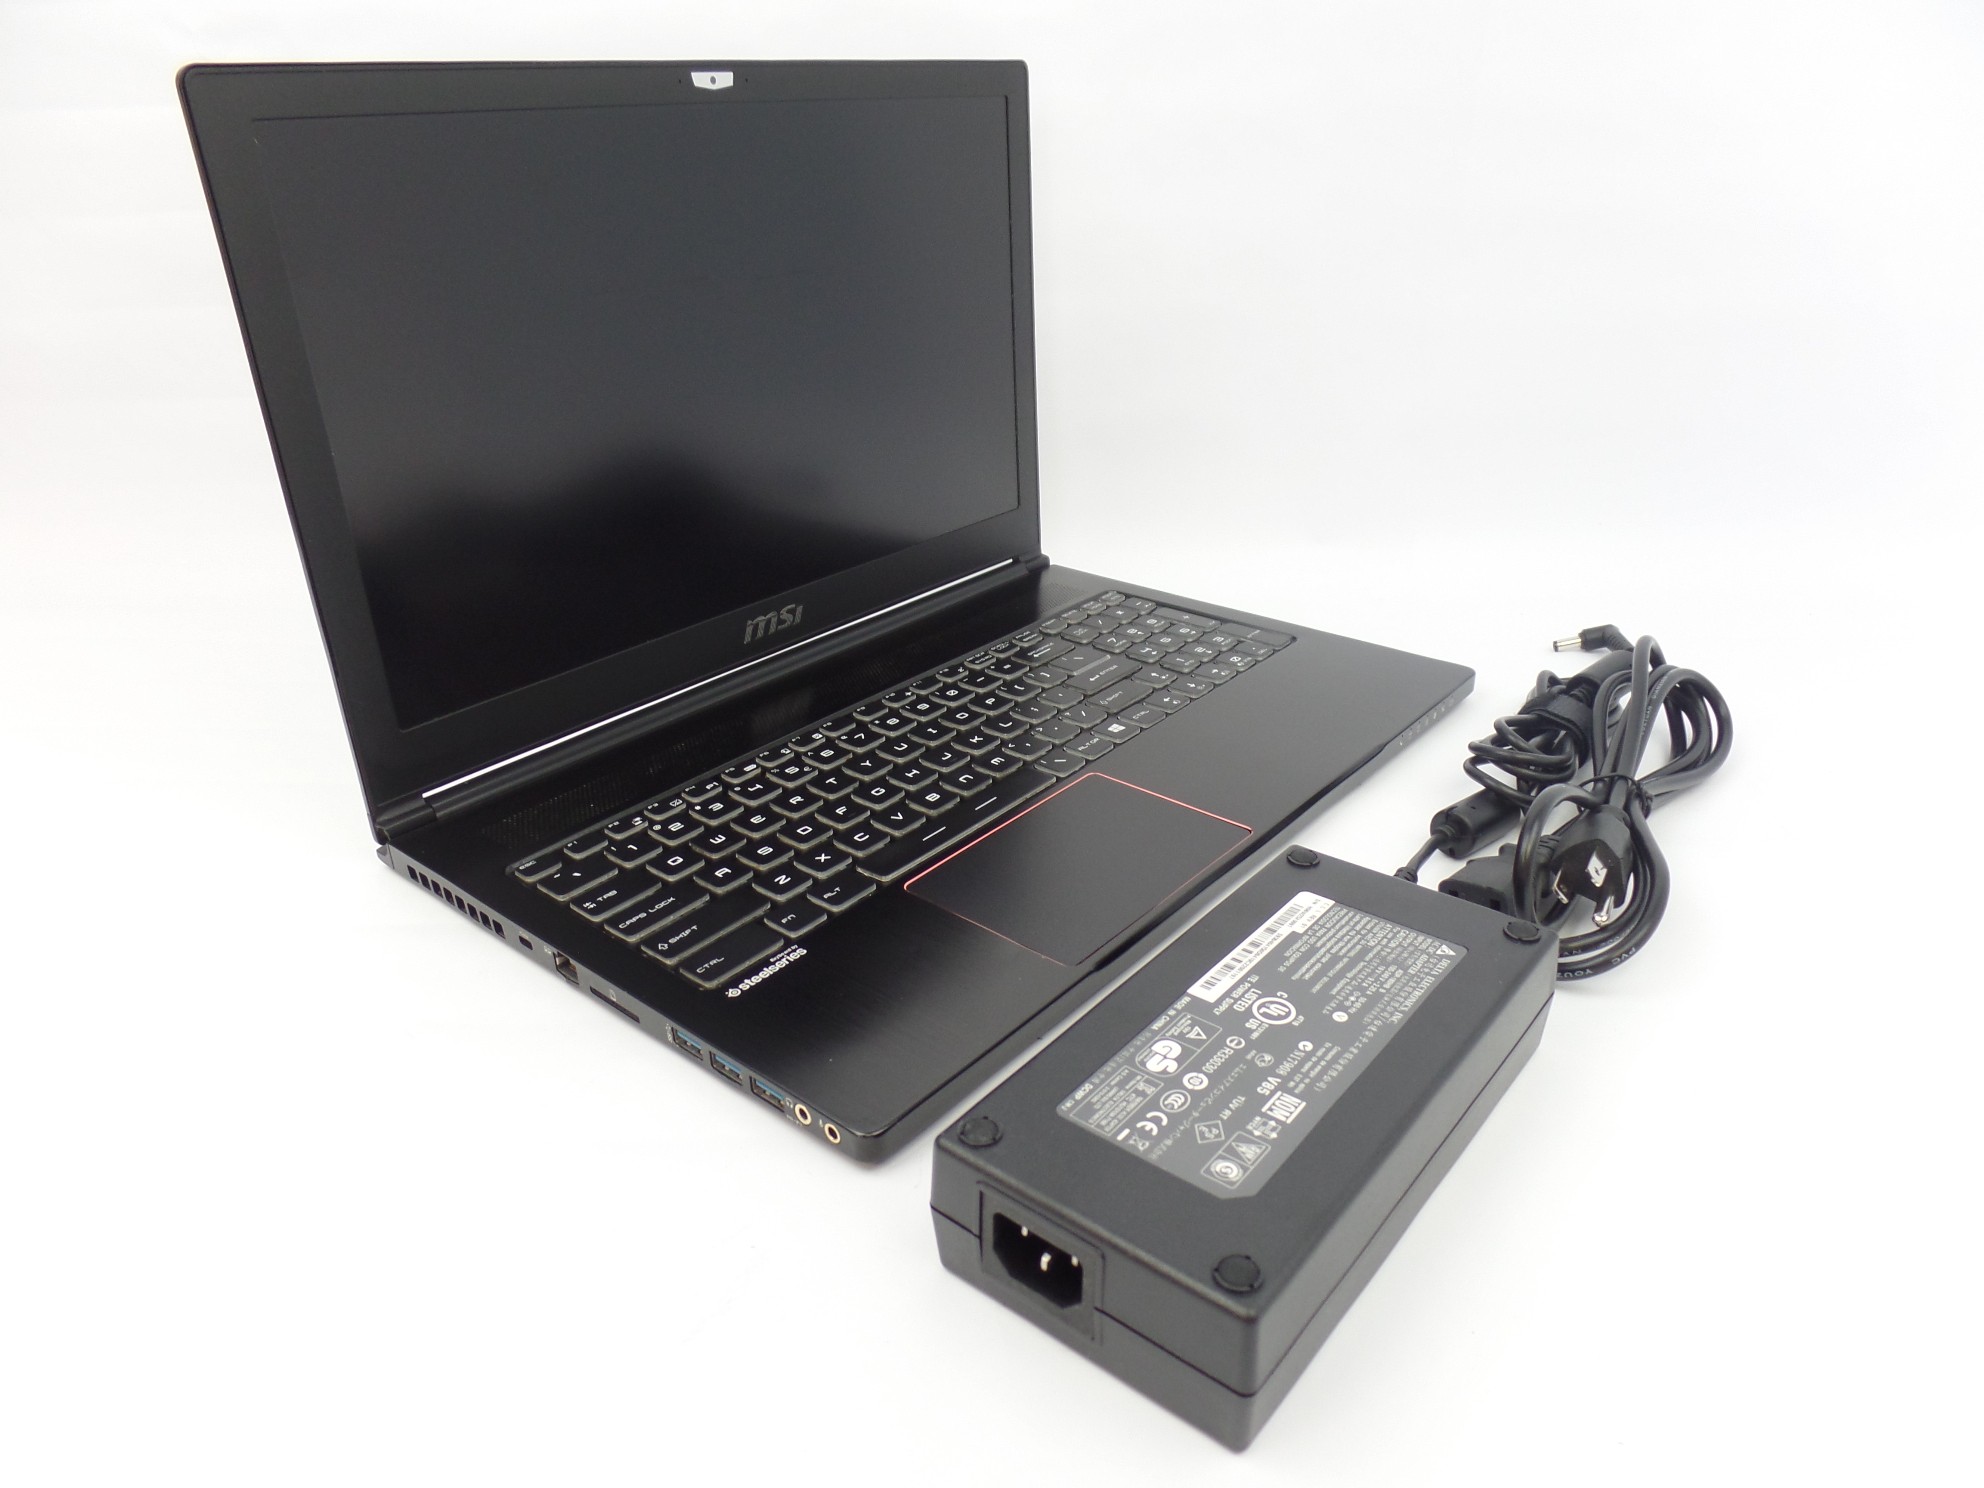 MSI GS63VR 6RF 15.6" FHD i7-7700HQ 16GB 1TB+128GB GTX 1060 W10H Gaming Laptop U